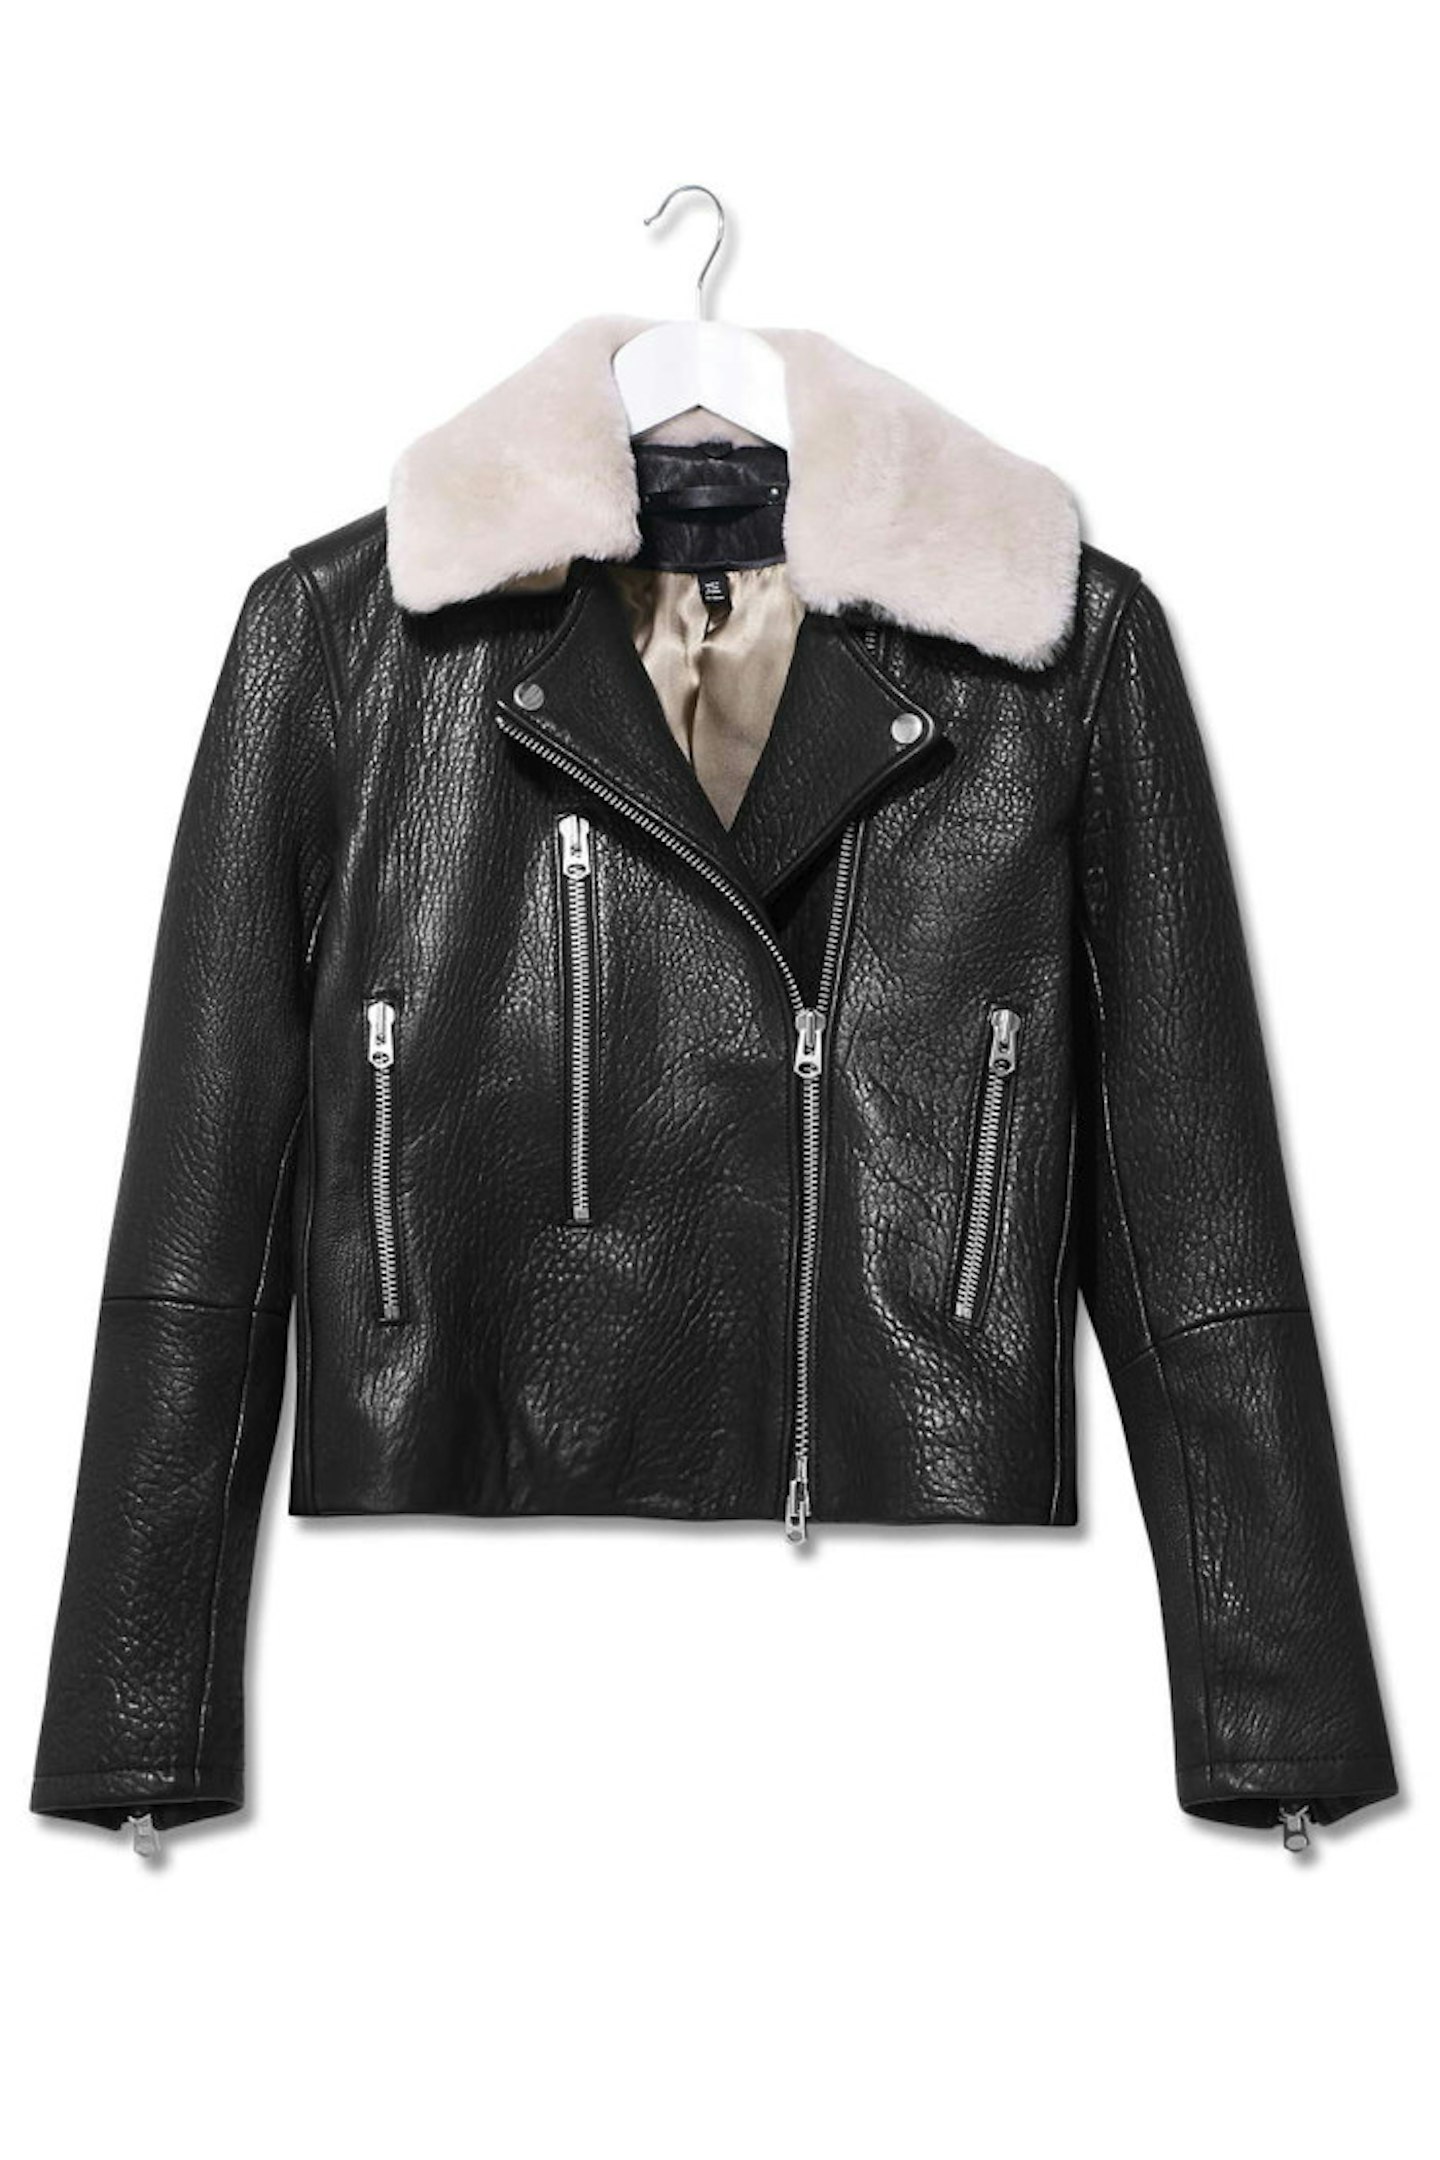 Topshop Boutique Leather Jacket, £295.00